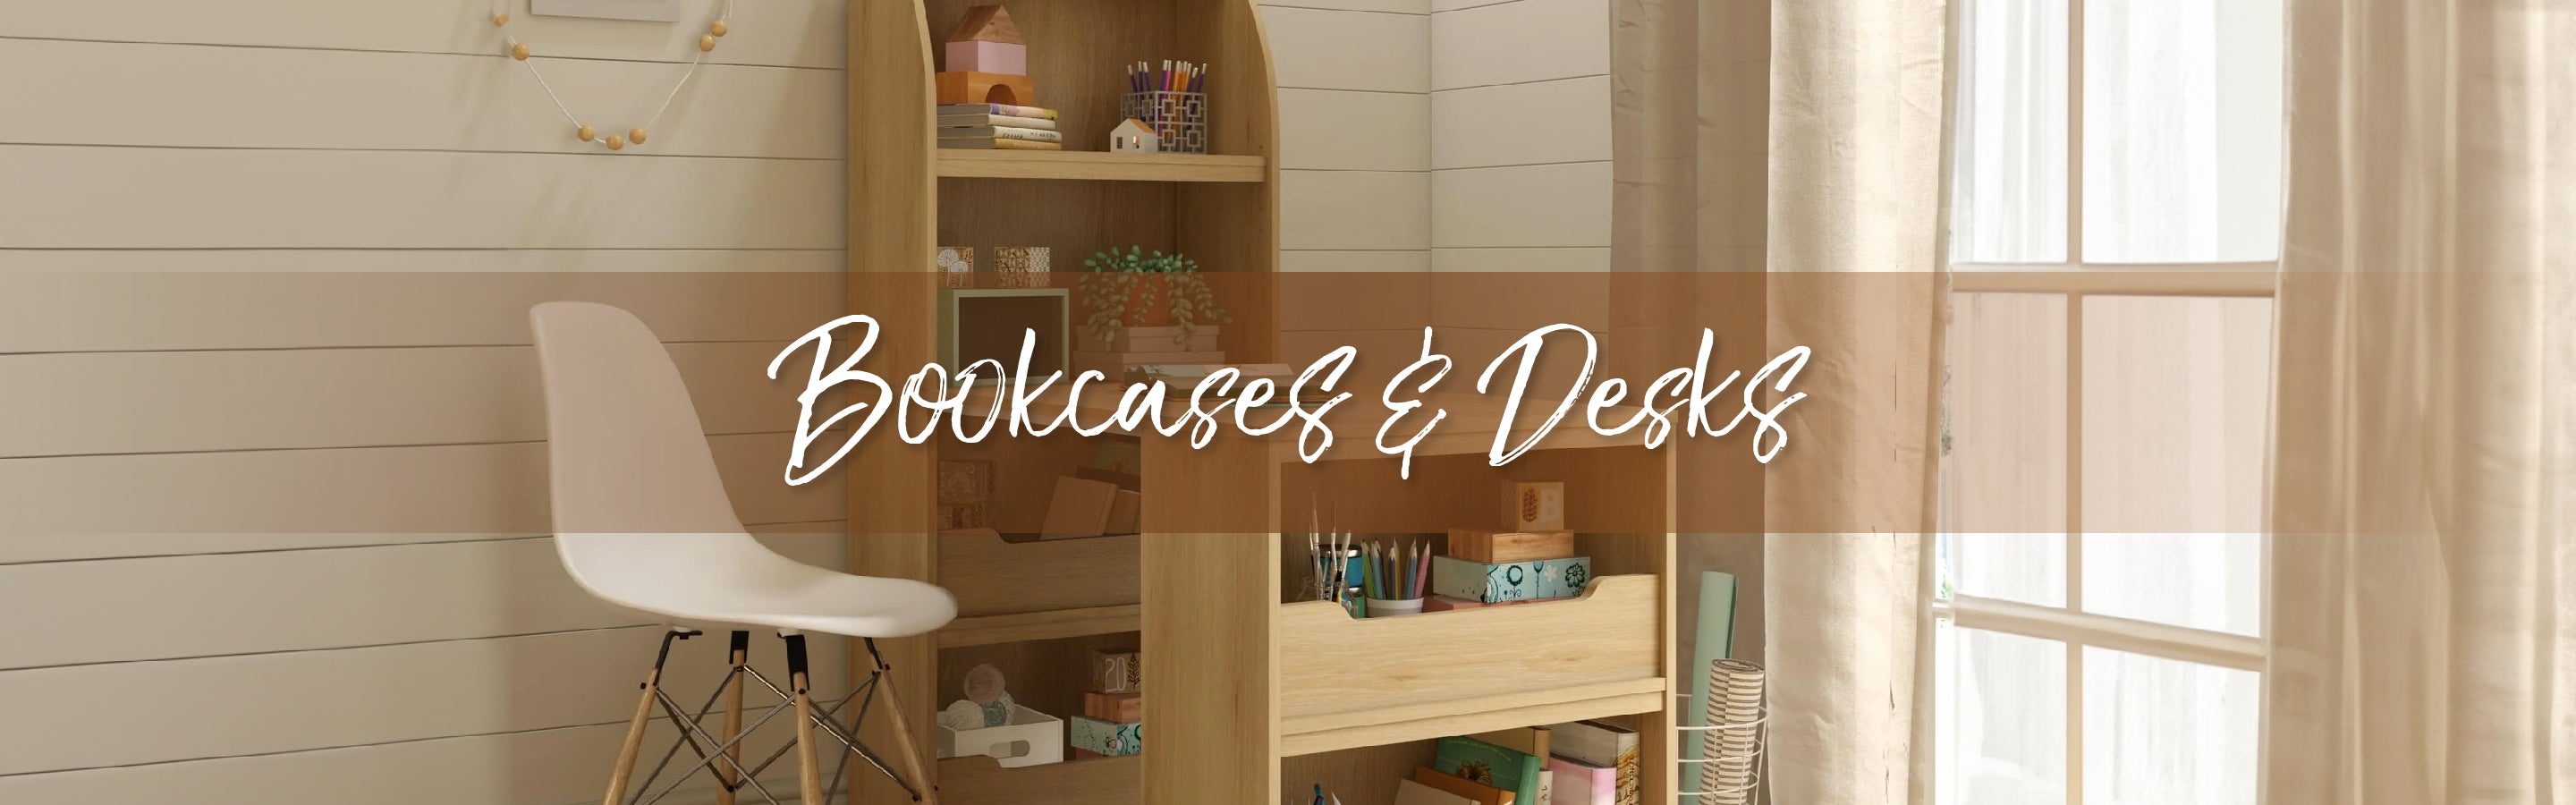 DIY Wood Closet Shelves - Amelia Lawrence Style